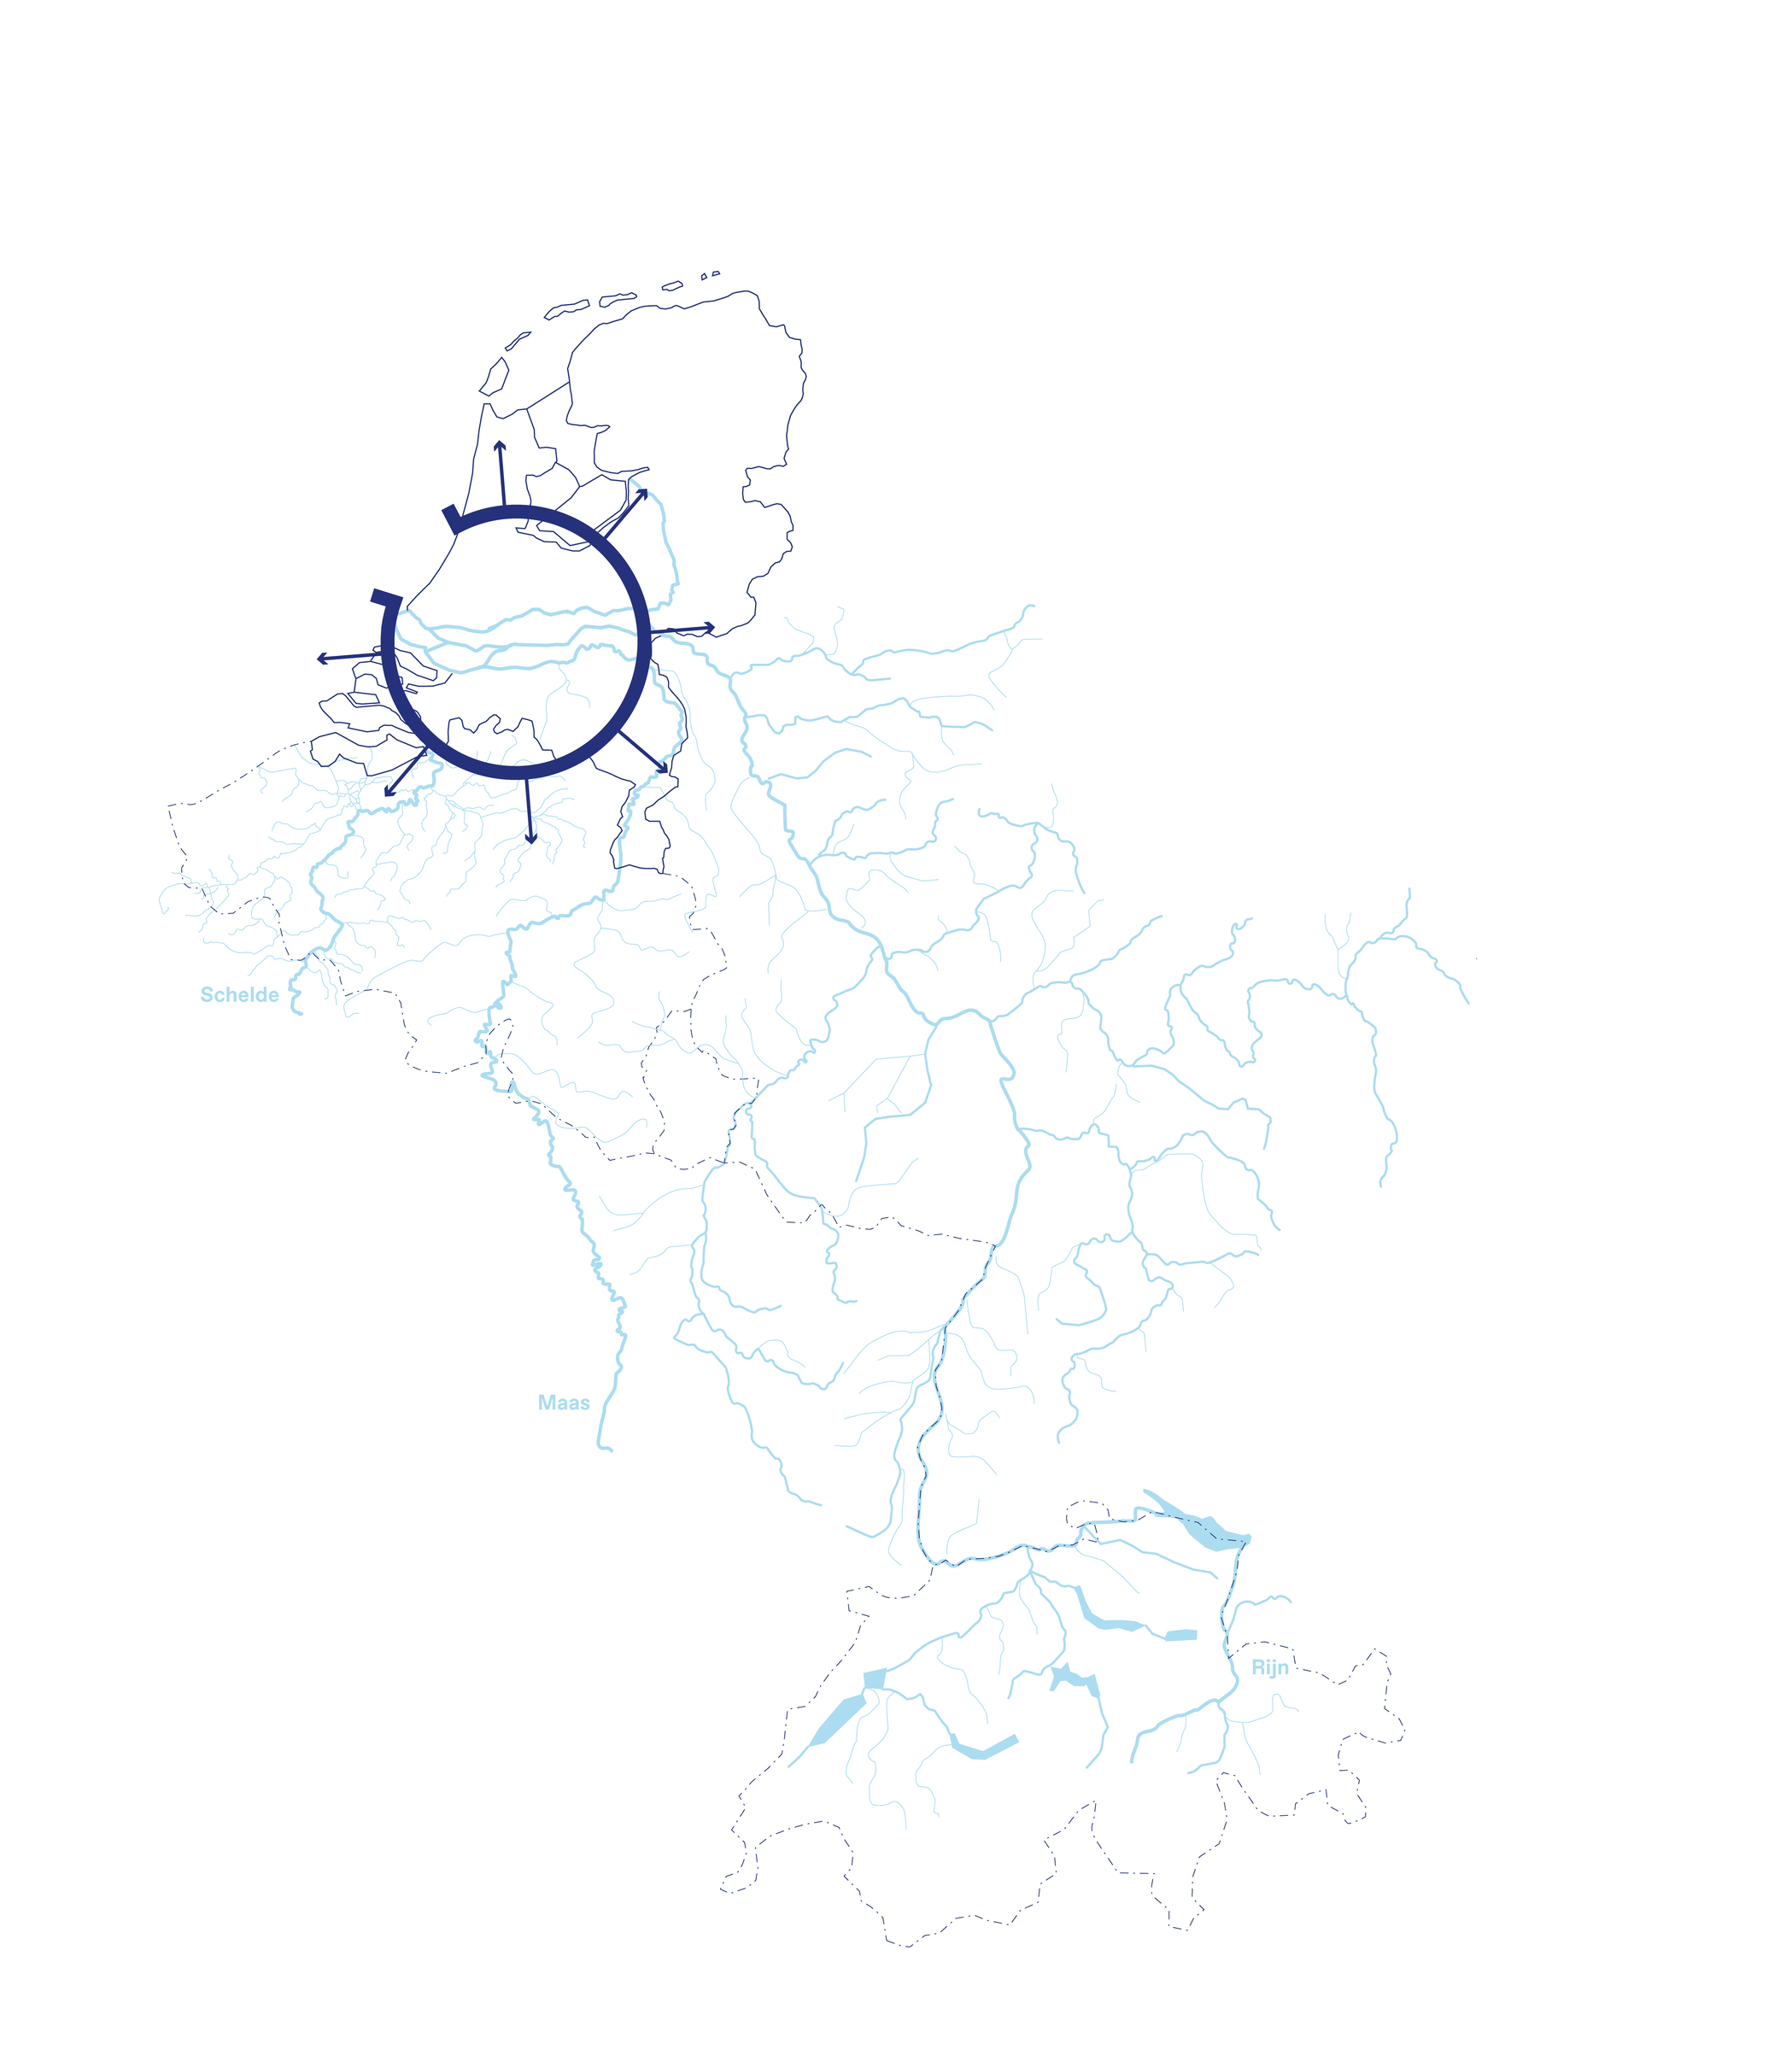 Globale positie van de doorsnede van de Nederlandse delta, kijkend naar de stroomgebieden van Rijn, Maas en Schelde.